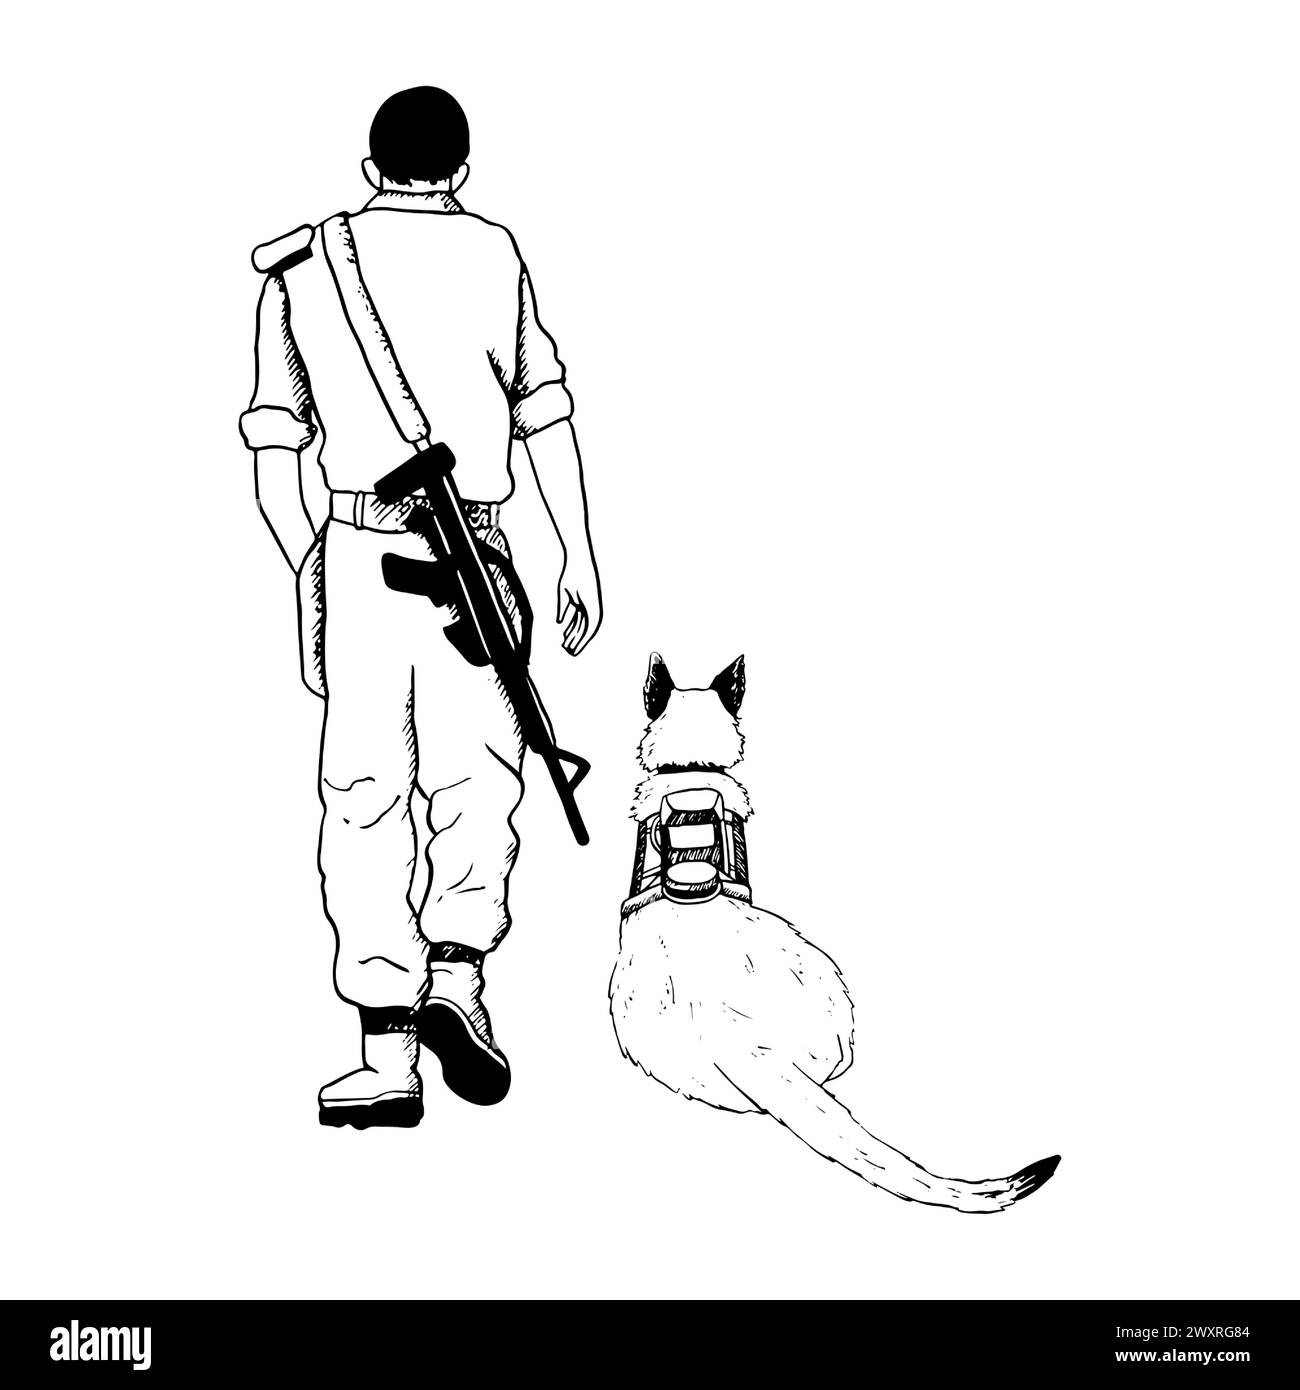 Perro K9 y soldado caminando vista trasera Ilustración del Vector